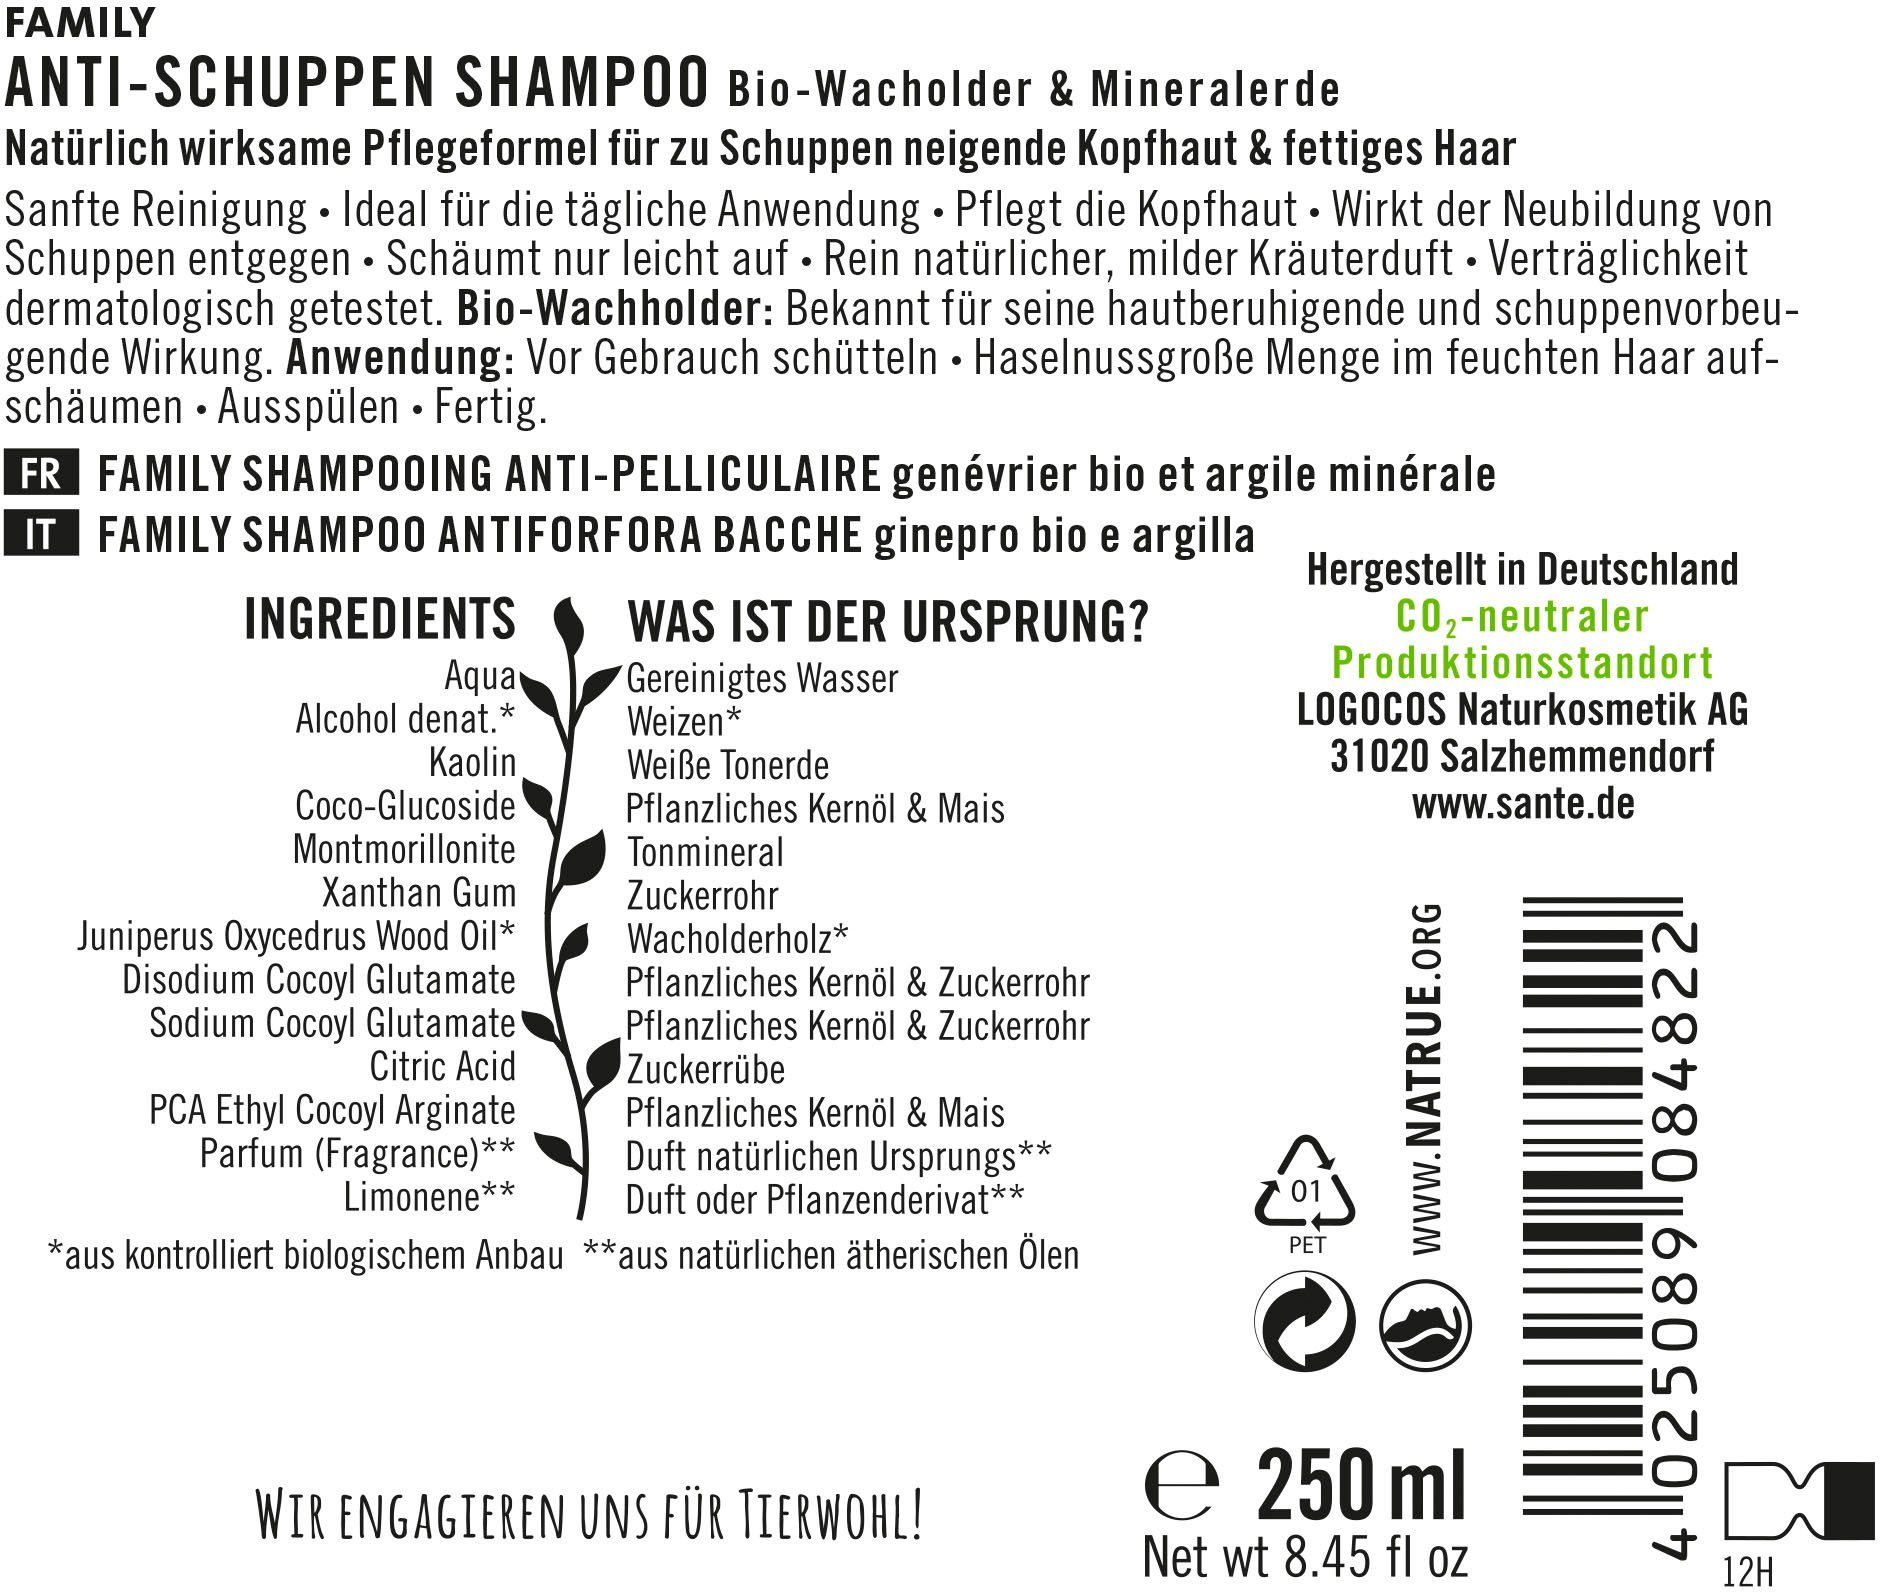 Haarshampoo Shampoo FAMILY Anti-Schuppen SANTE